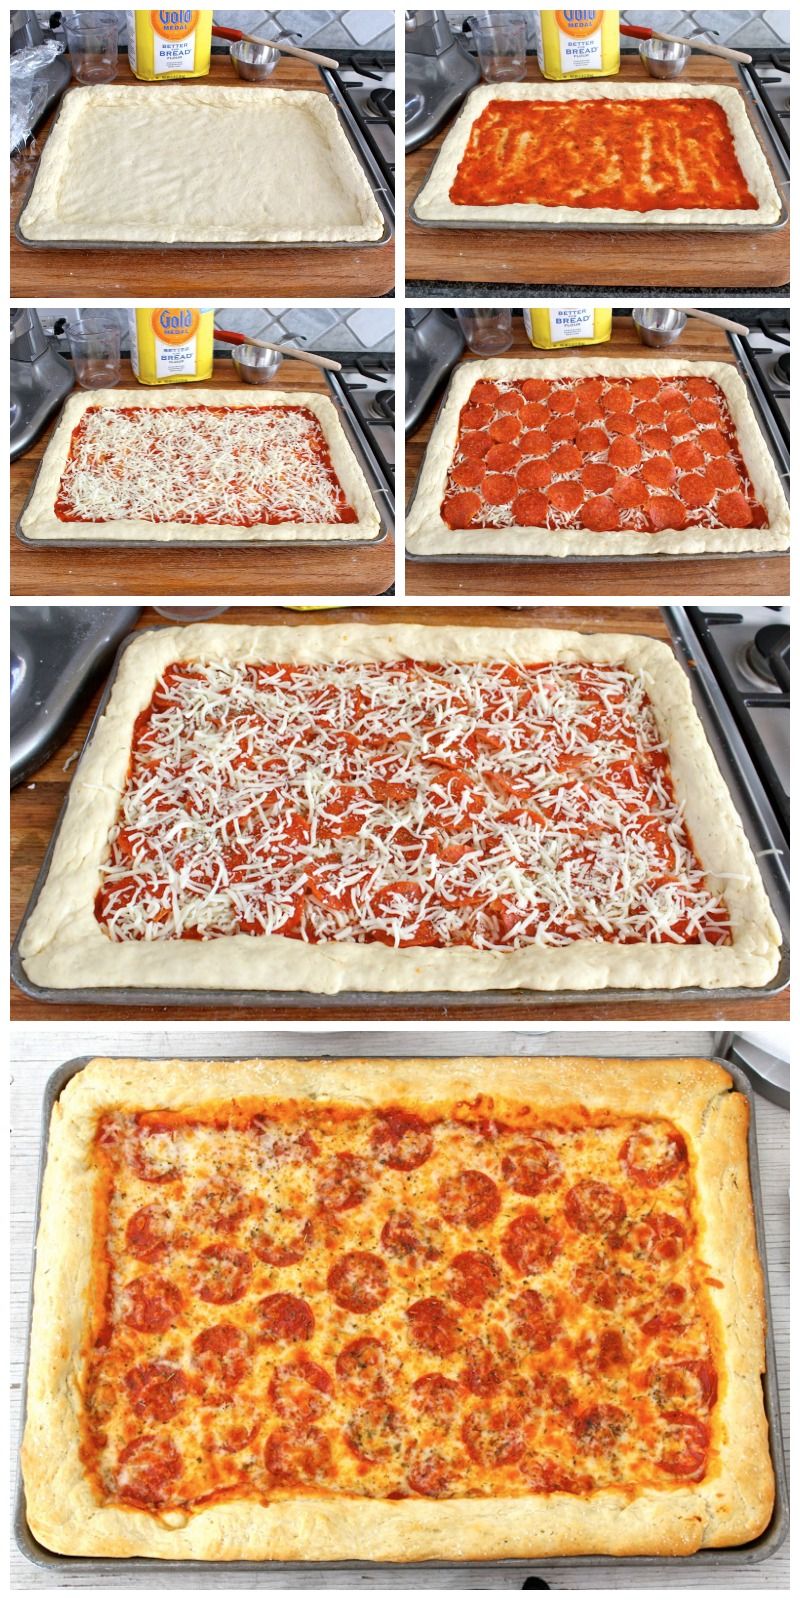 вкусная начинка для пиццы в домашних условиях с фото пошагово в духовке фото 60